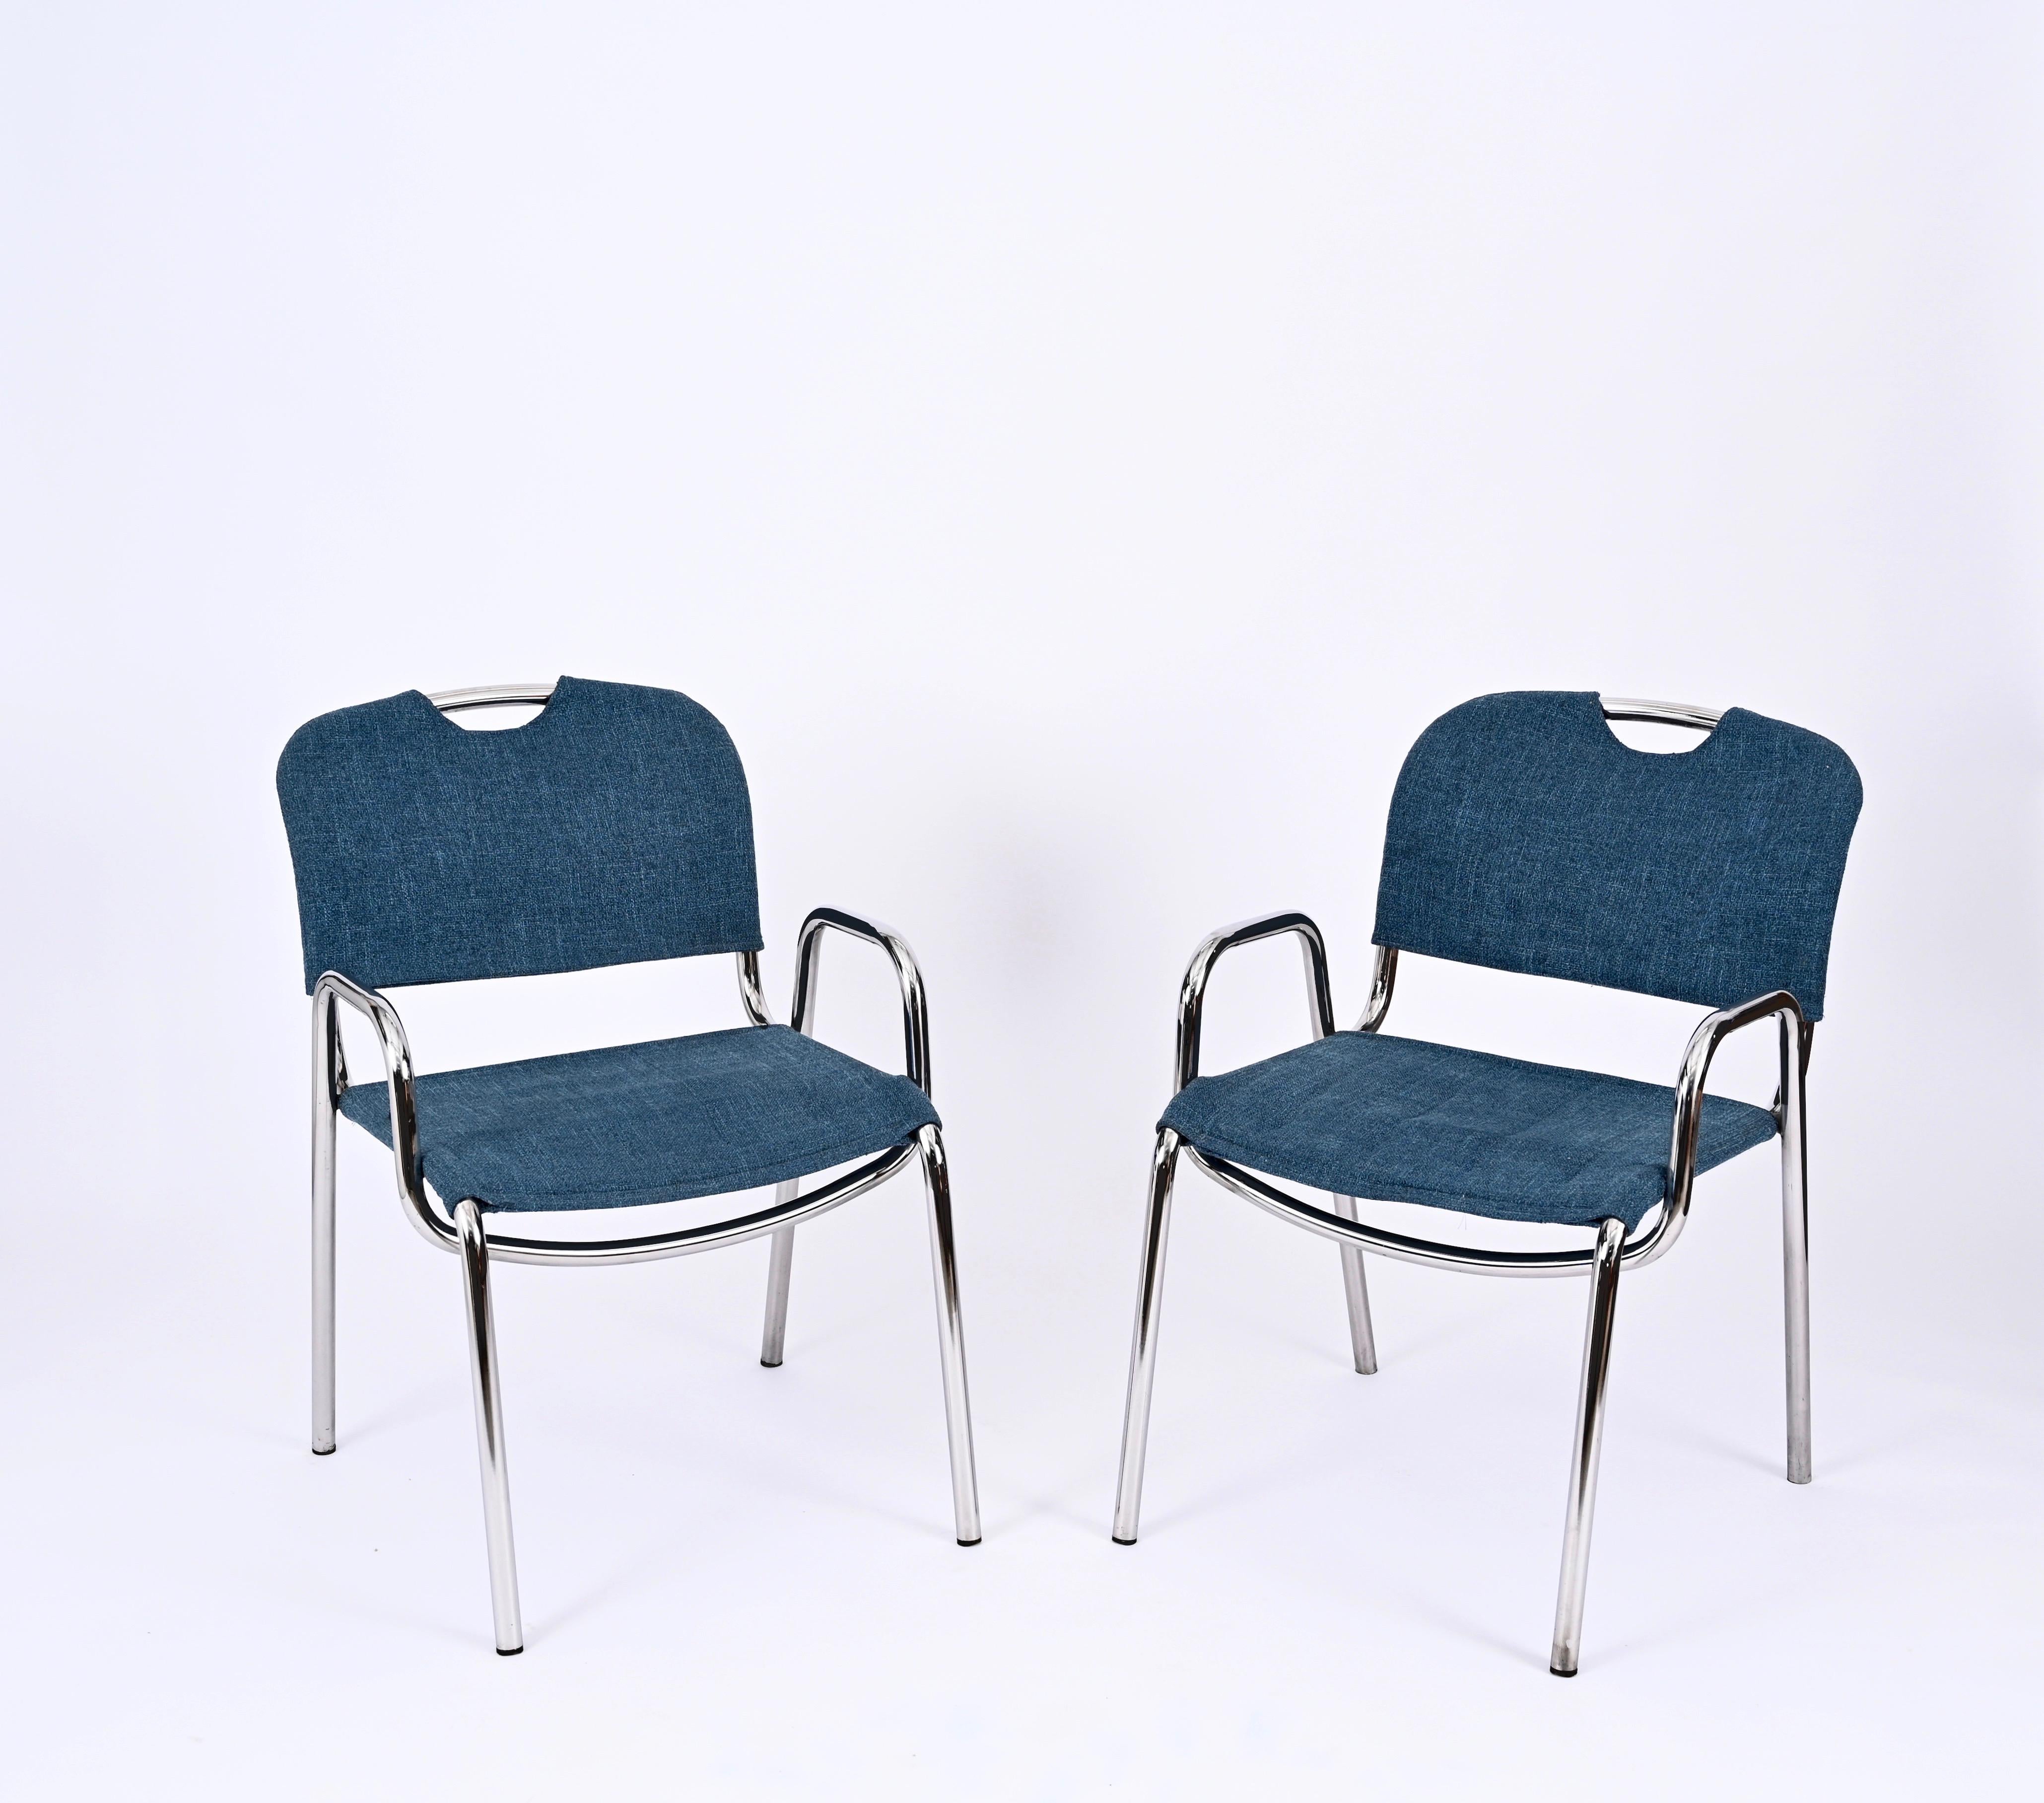 Hübsches Paar stapelbarer Castiglietta-Stühle in blauem Stoff. Diese ikonischen Stühle wurden von Achille Castglioni entworfen und von Zanotta in den 1960er Jahren in Italien hergestellt. Die Stühle sind auf der Unterseite der Beine signiert. 

Die